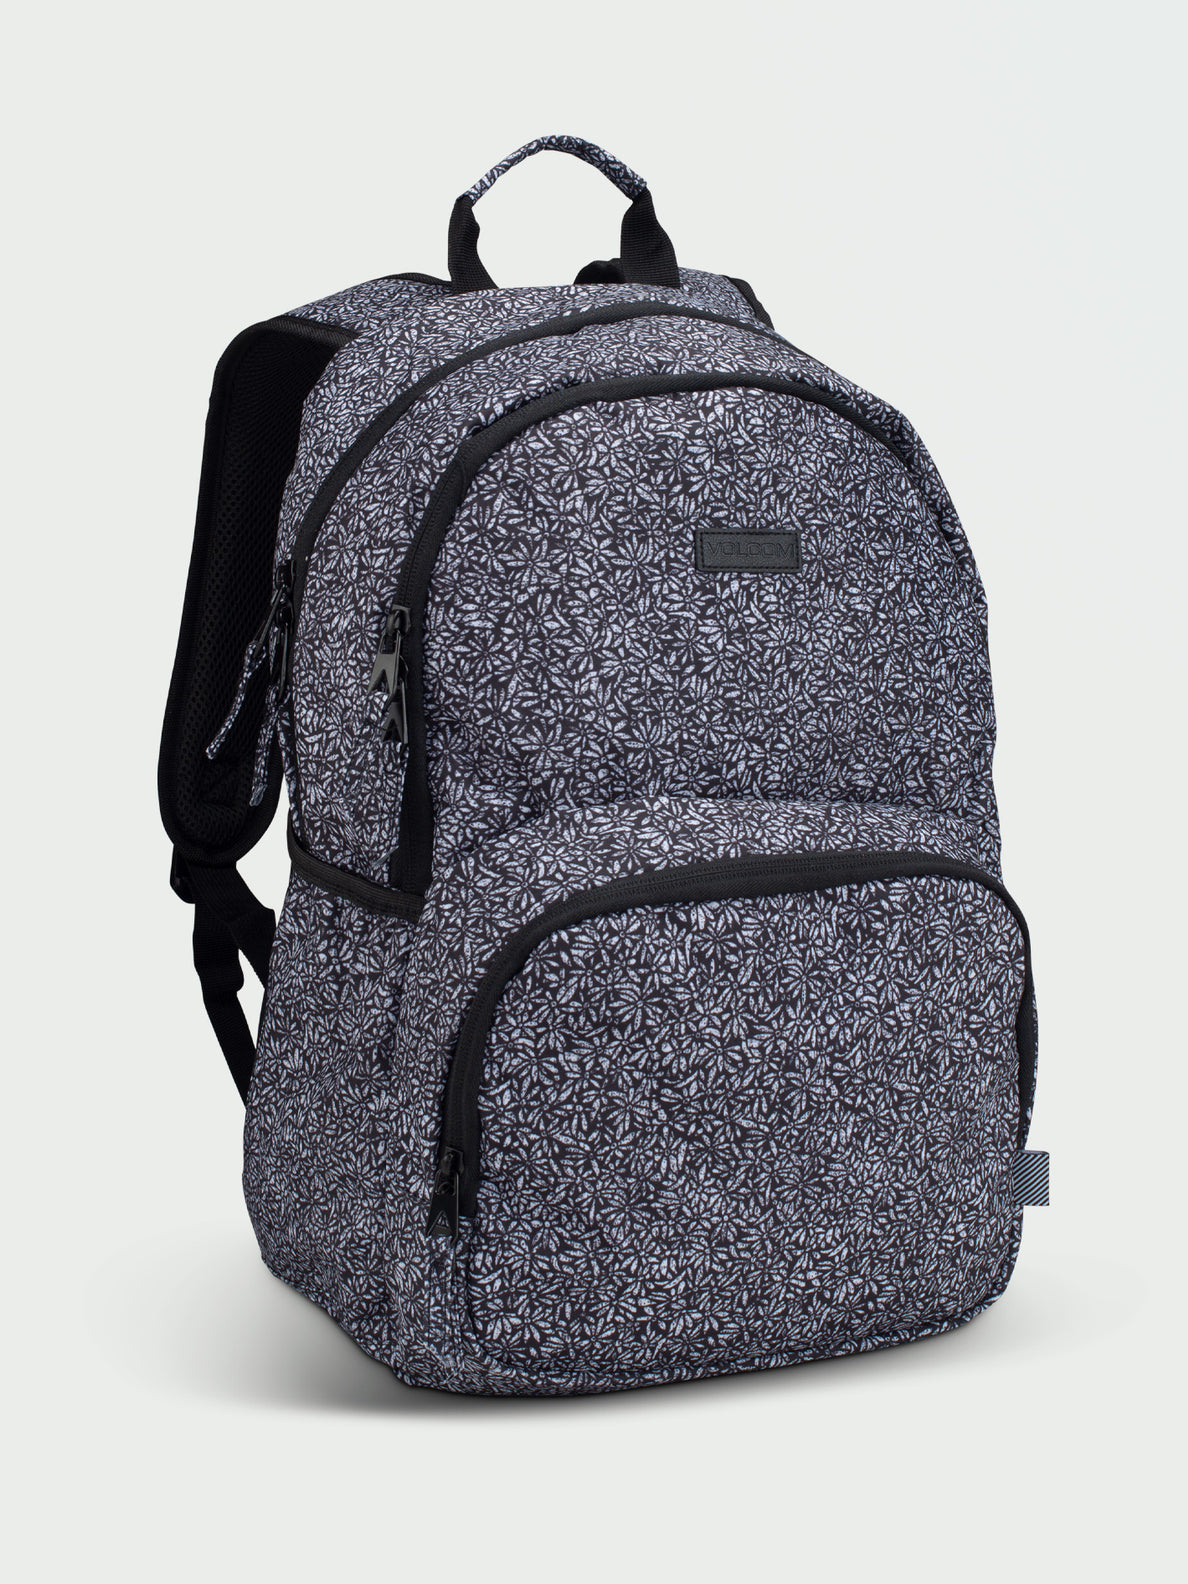 Upperclass Backpack - Black White